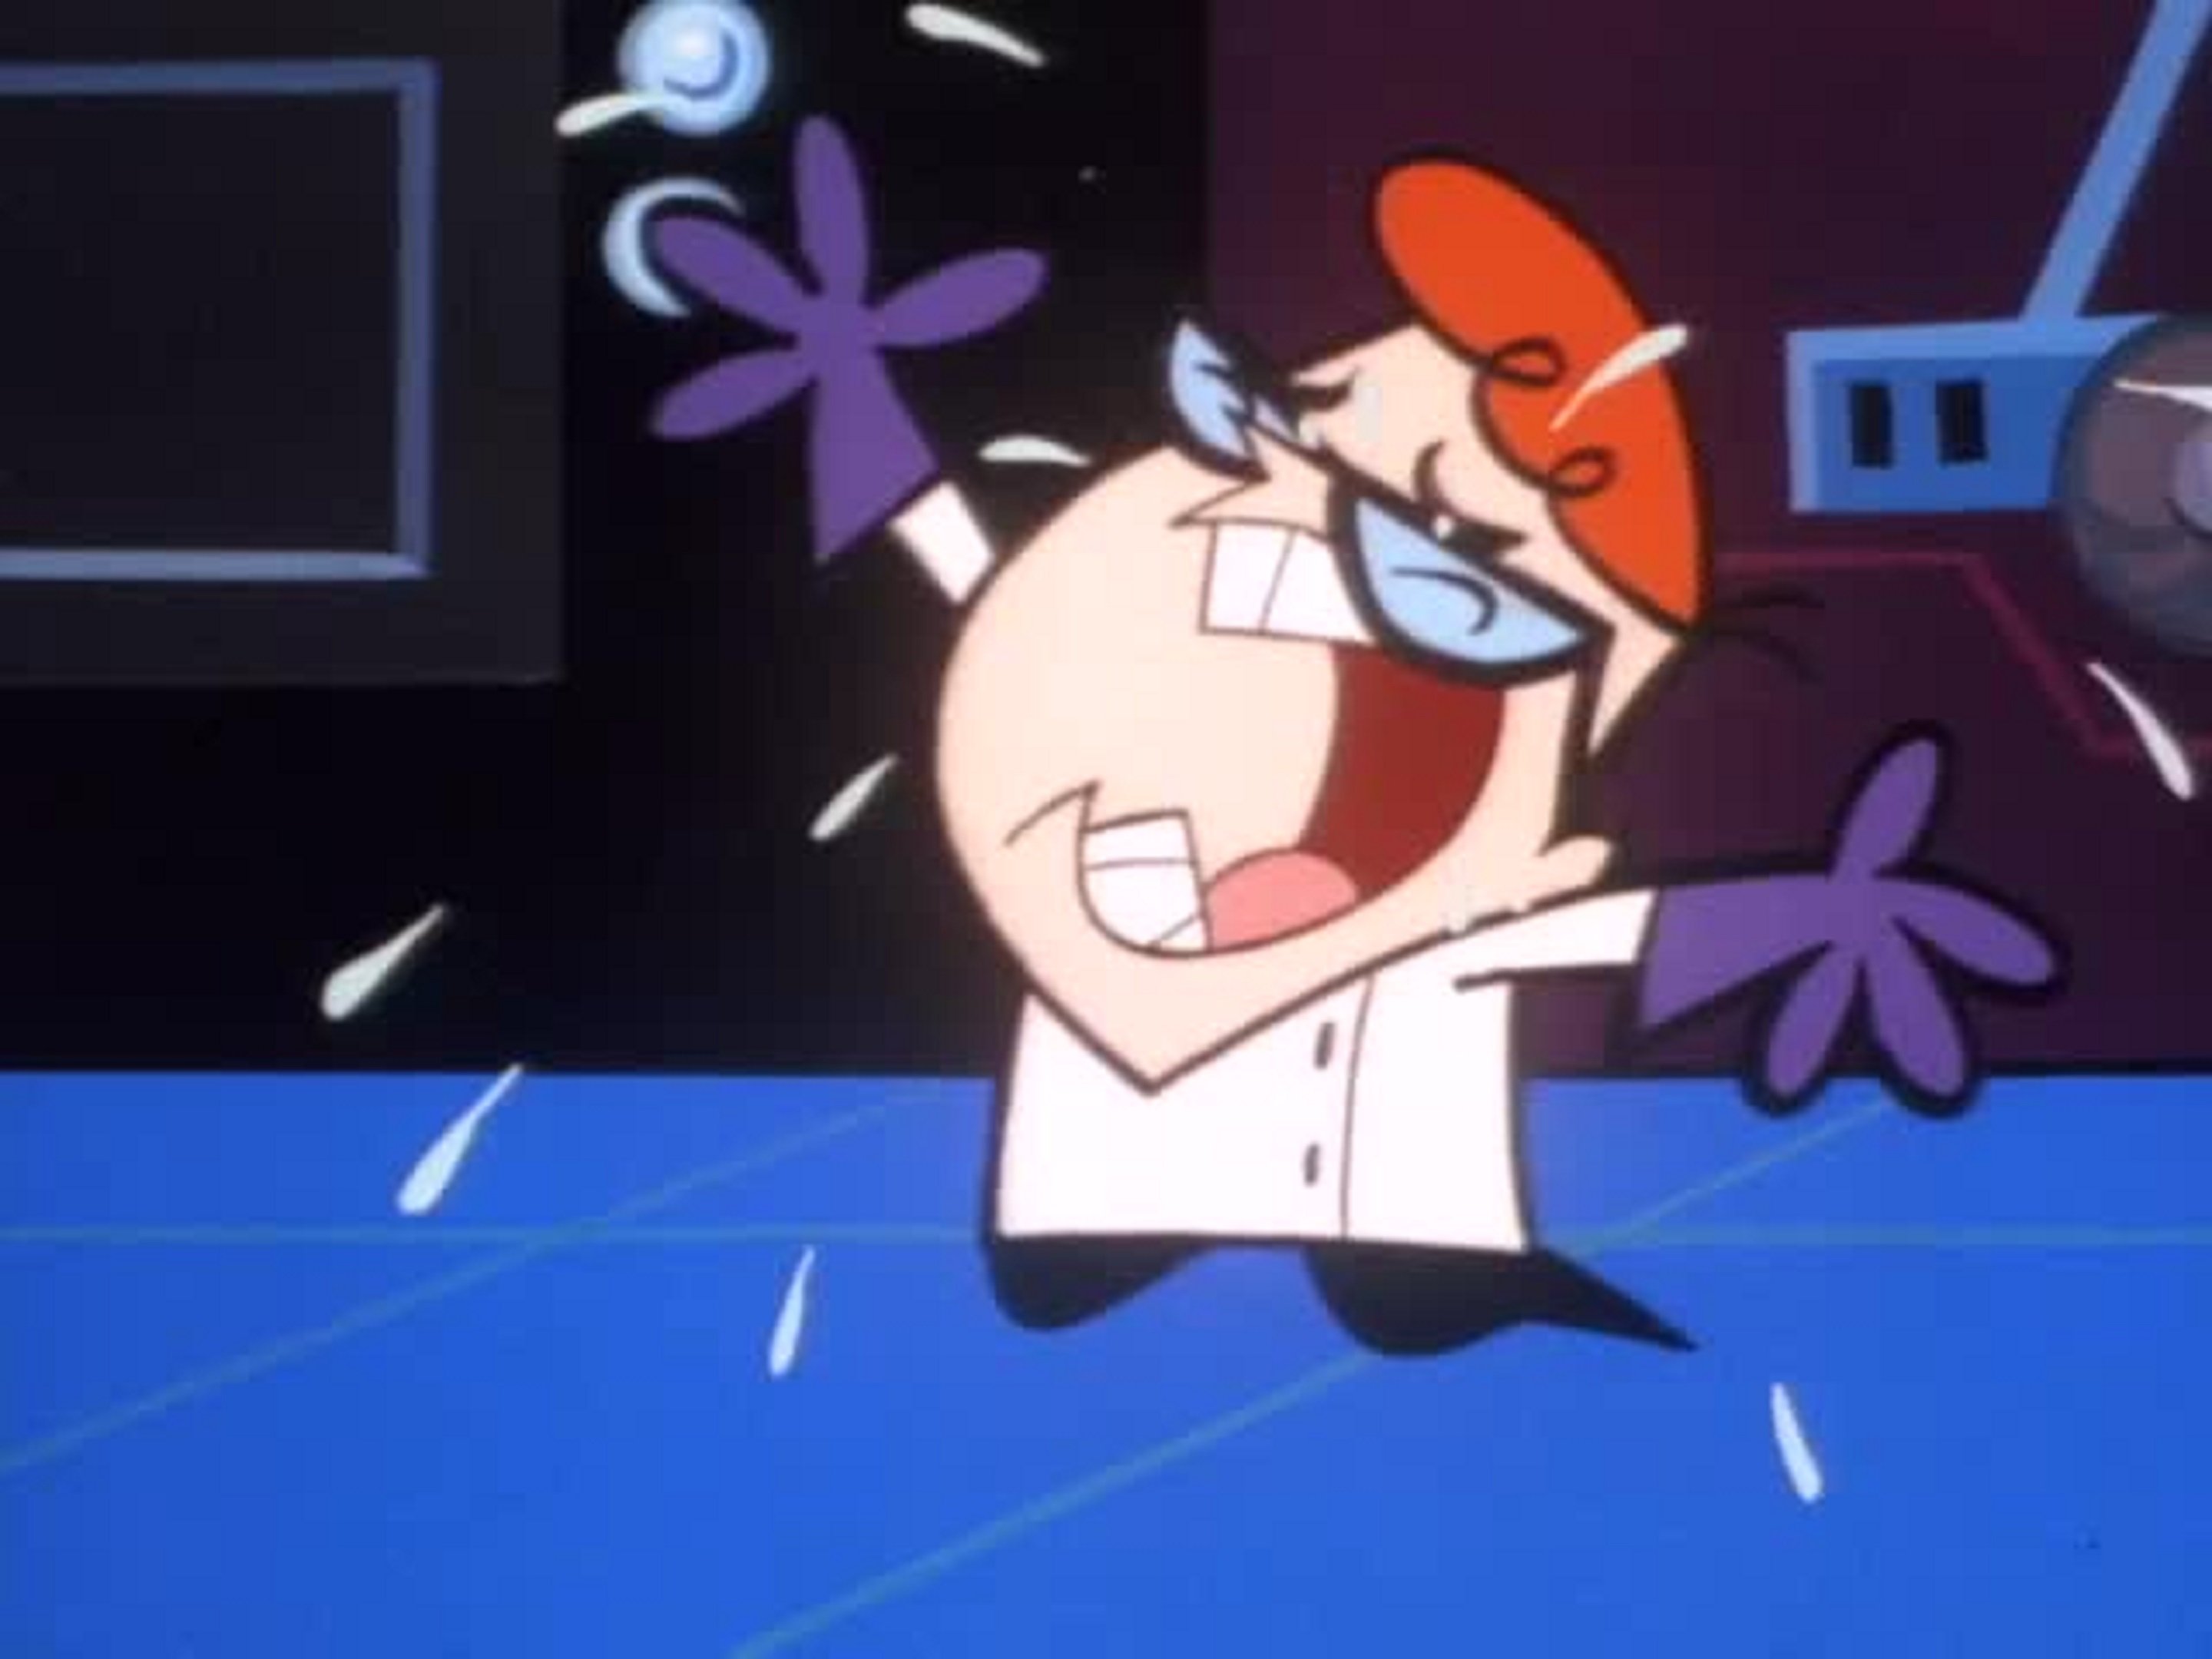 Dexter's lab voice